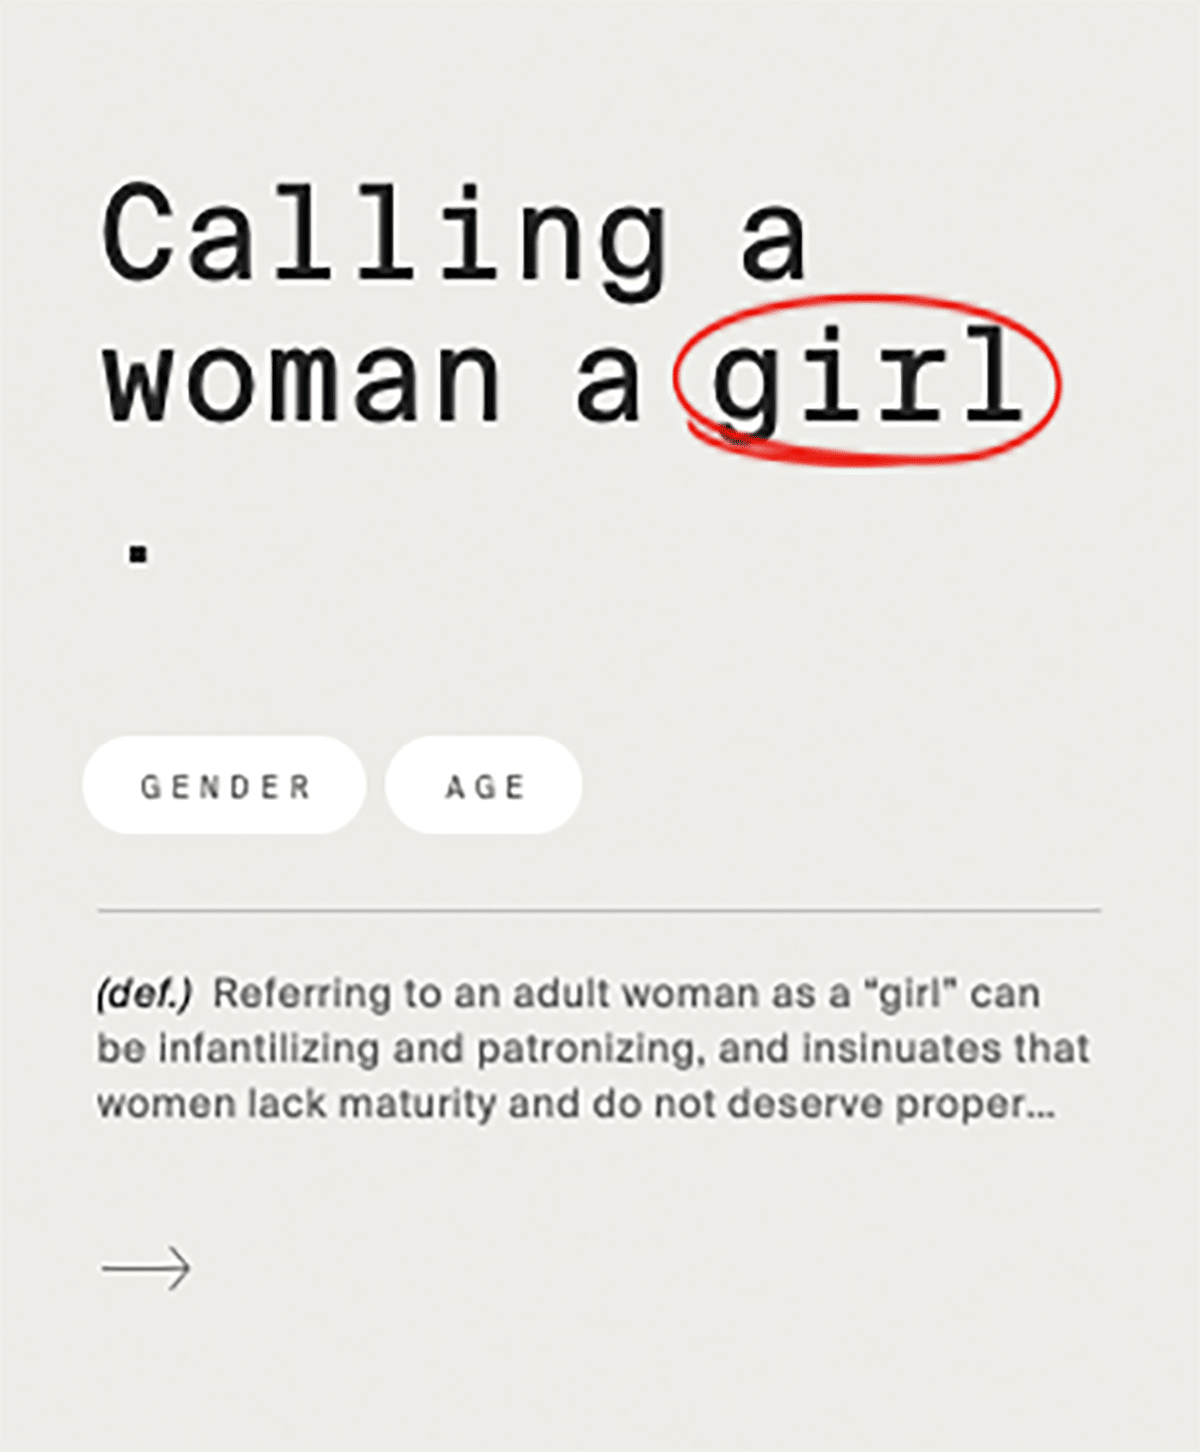 Eine Flashcard auf der »Calling a woman a girl« steht. Das Wort girl ist rot umkreist